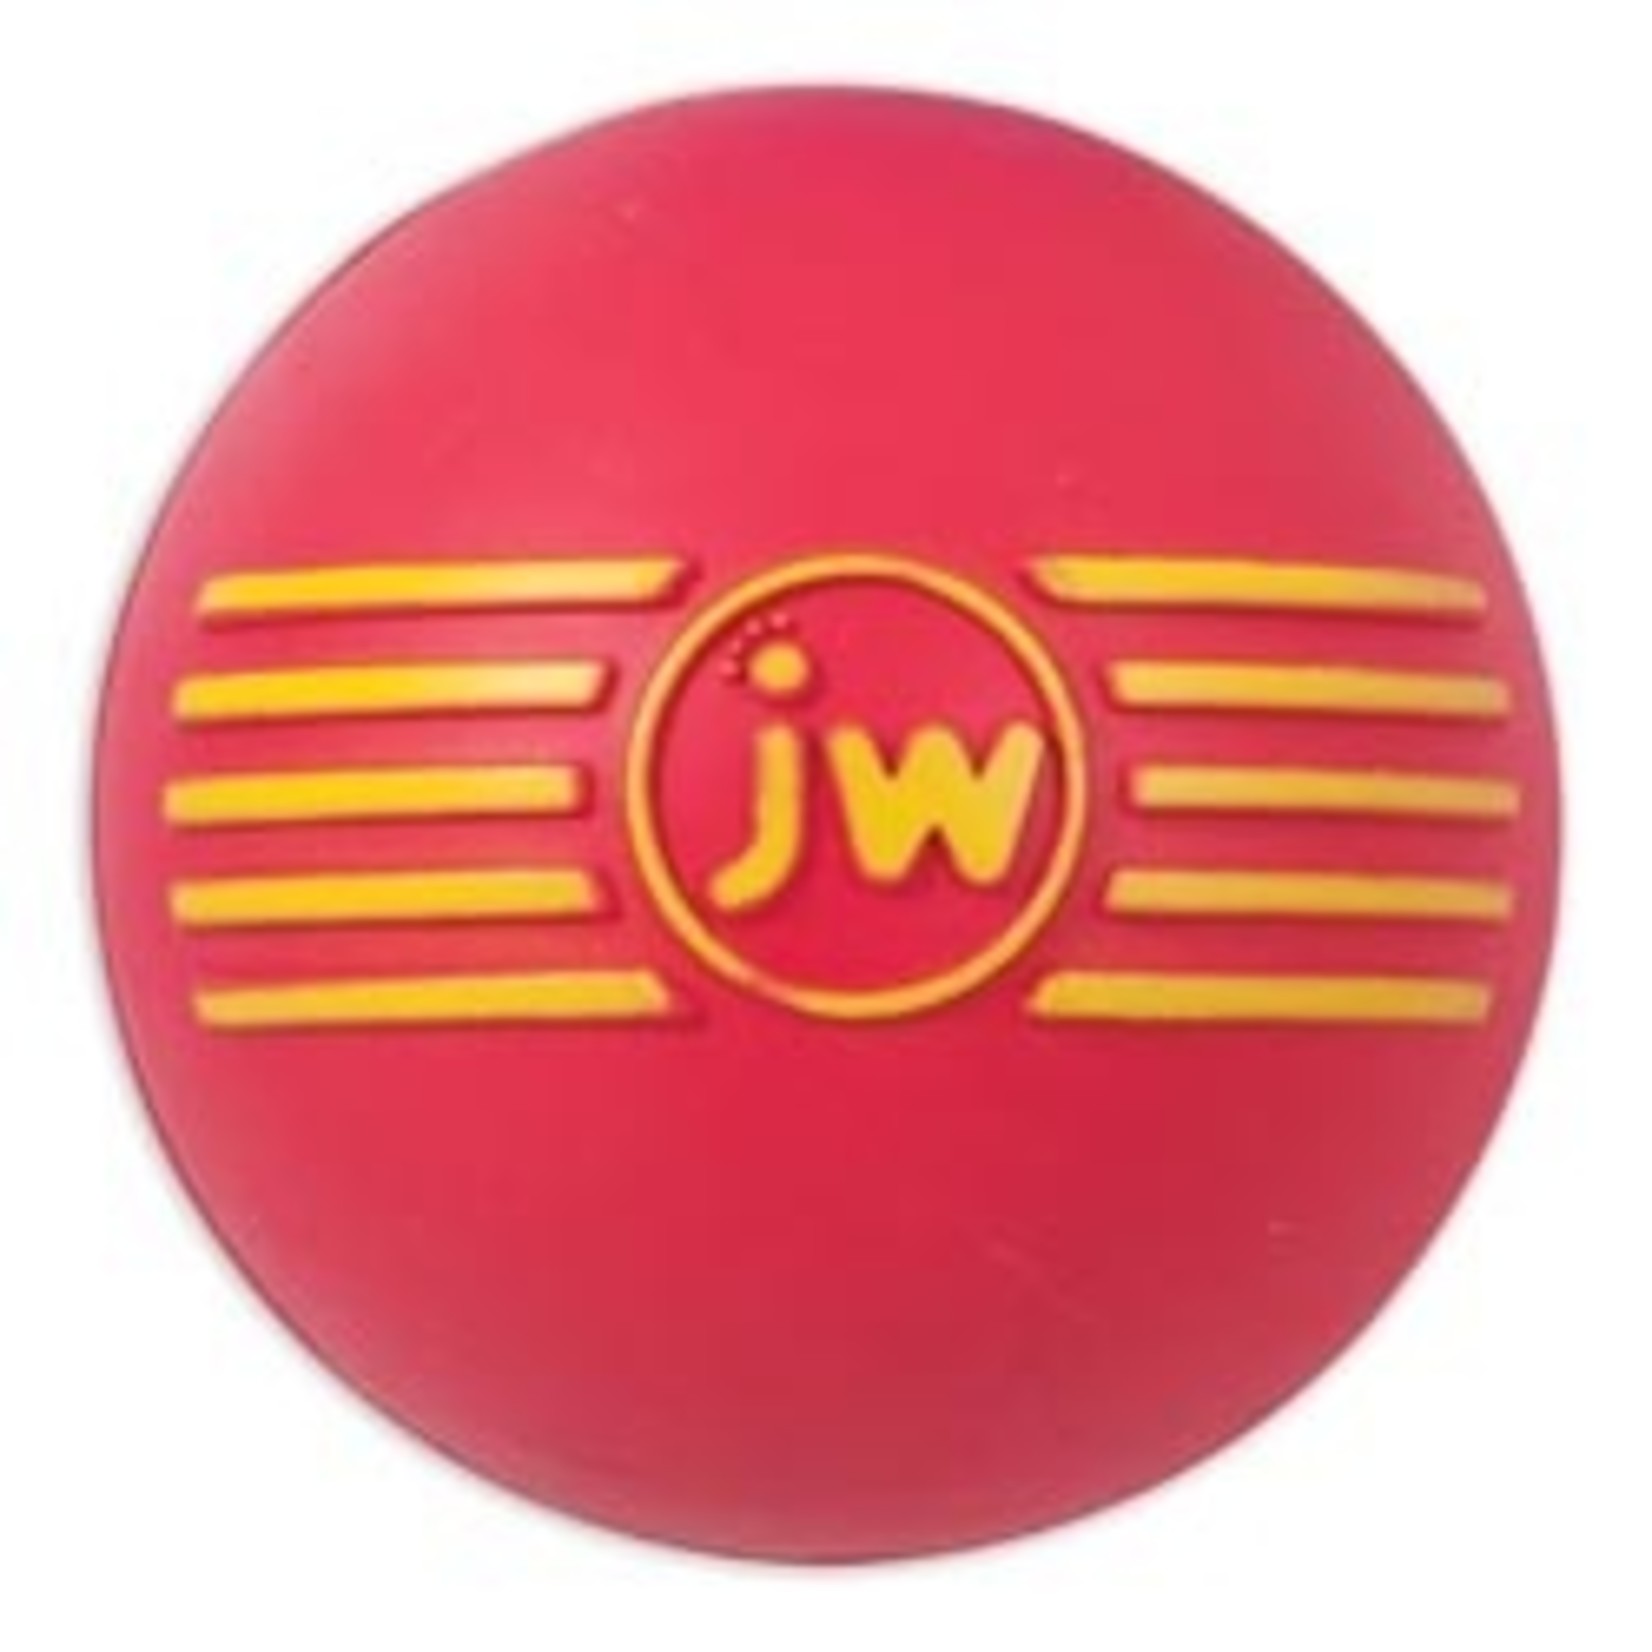 Petmate JWP Isqueak Ball Dog Toy